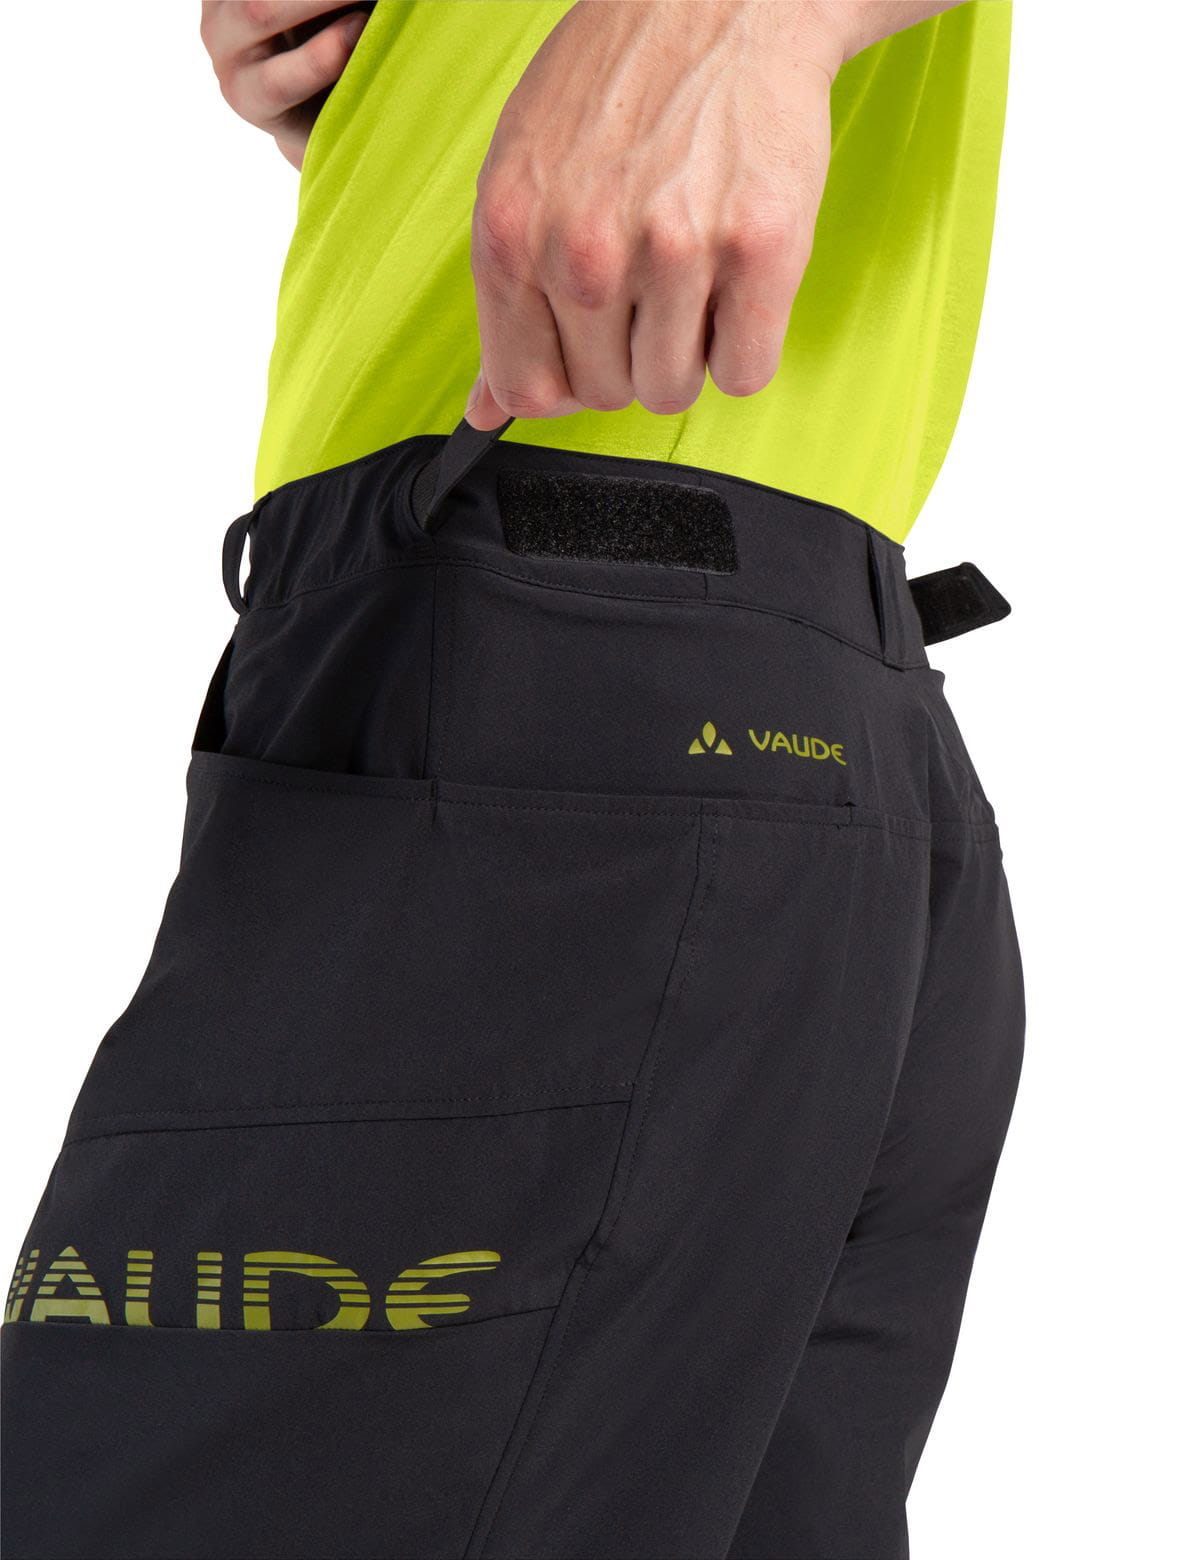 VAUDE Mens Altissimo Shorts III Bike Shorts with herausnehmbarer Innenhose